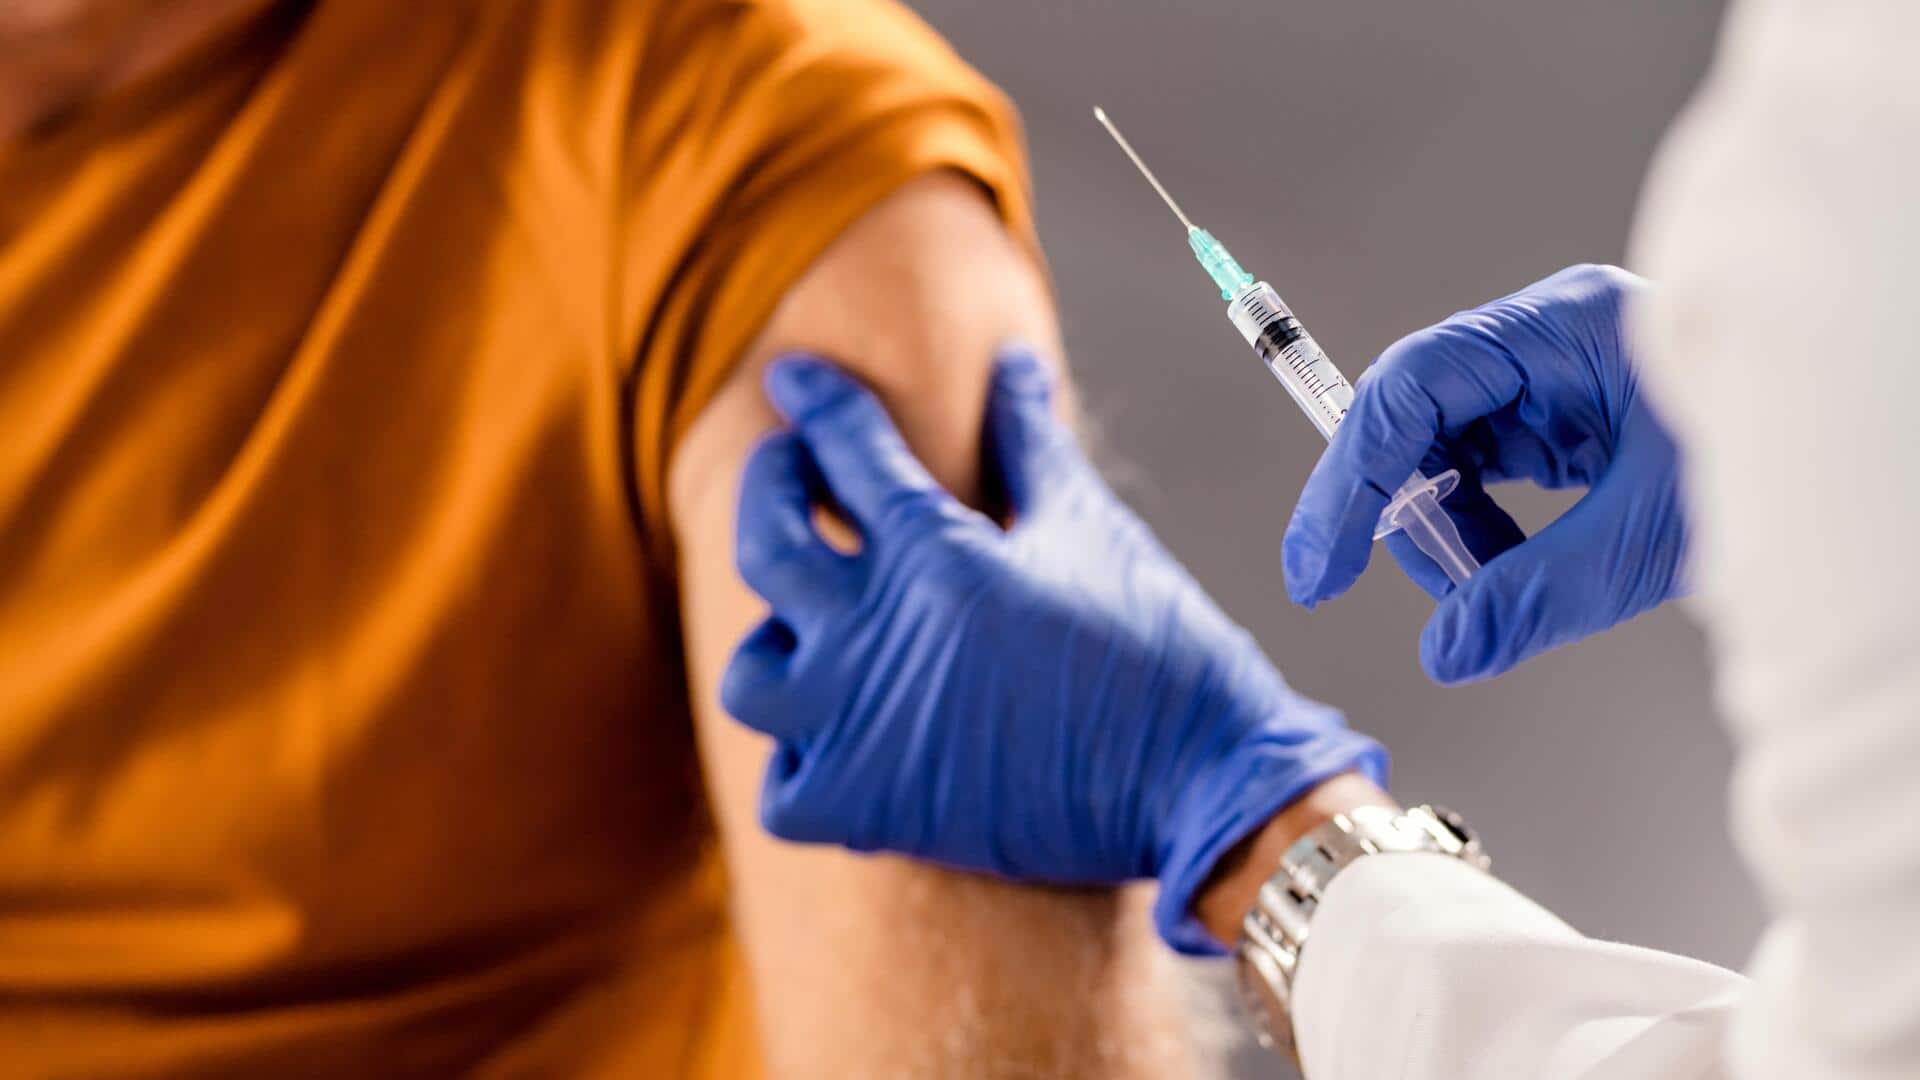 UK: मॉर्डना की कैंसर वैक्सीन का ट्रायल शुरू, कोविड वैक्सीन जैसी तकनीक का इस्तेमाल